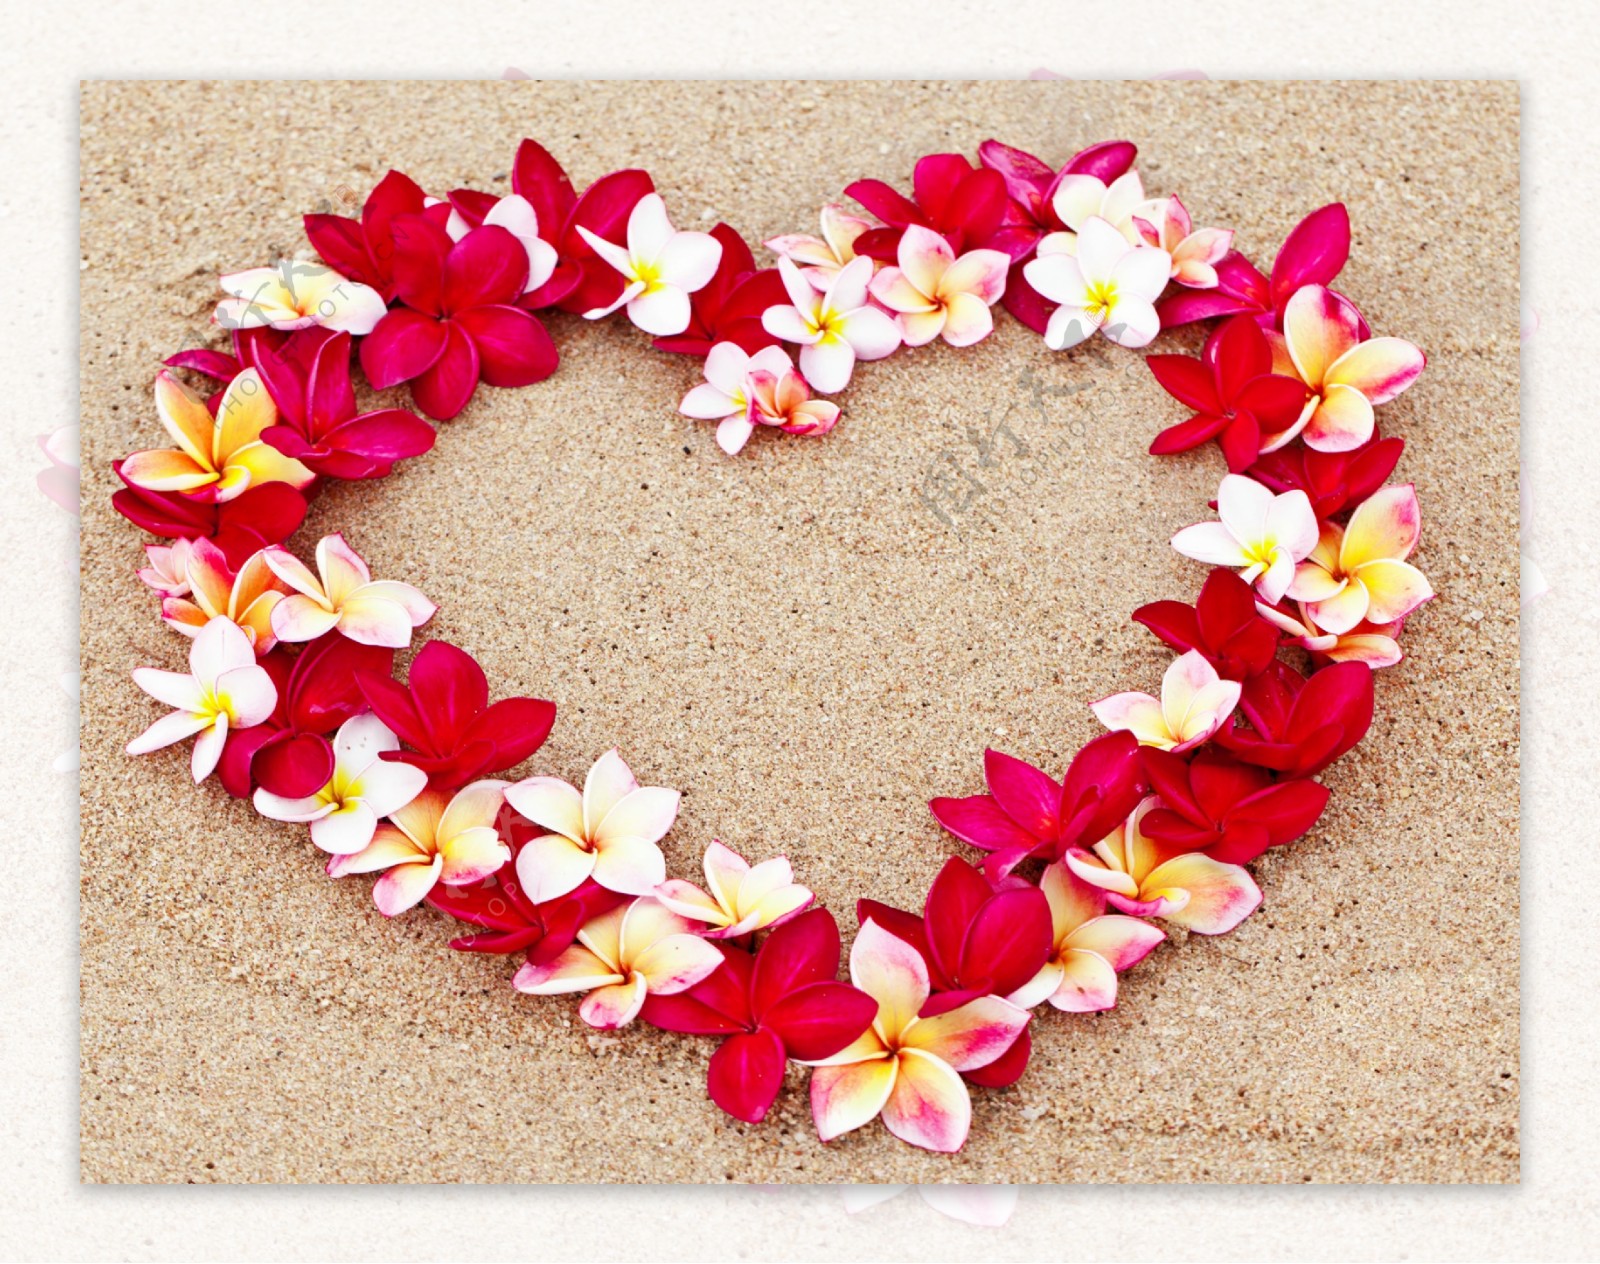 沙滩上的心形花朵图片